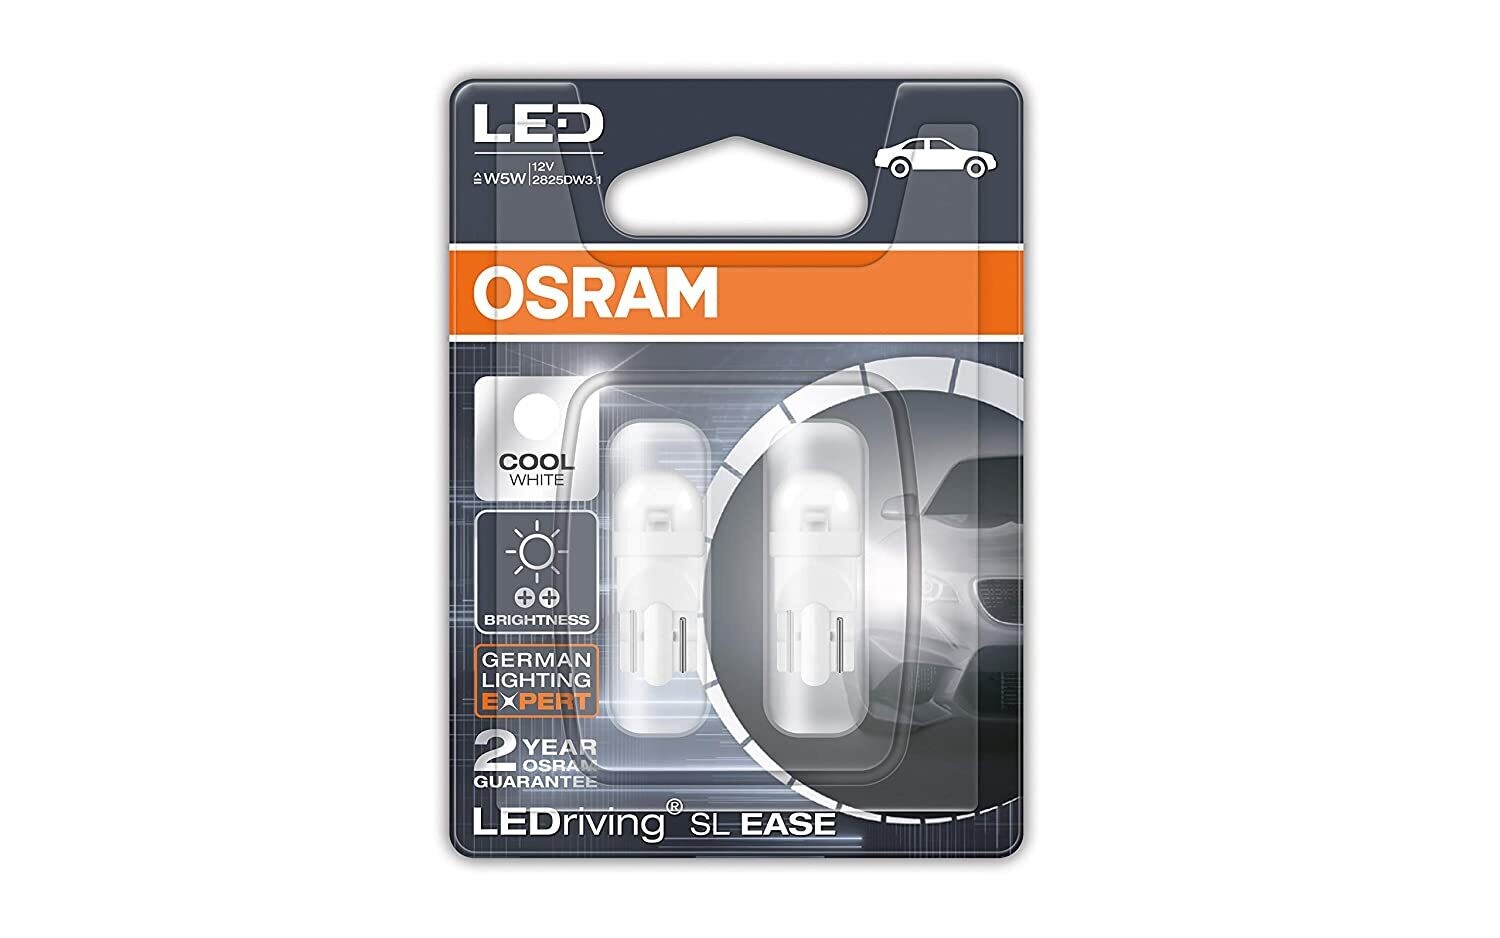 Osram LED Parking Light T10 (White, 2 Bulbs) - Pair of 4